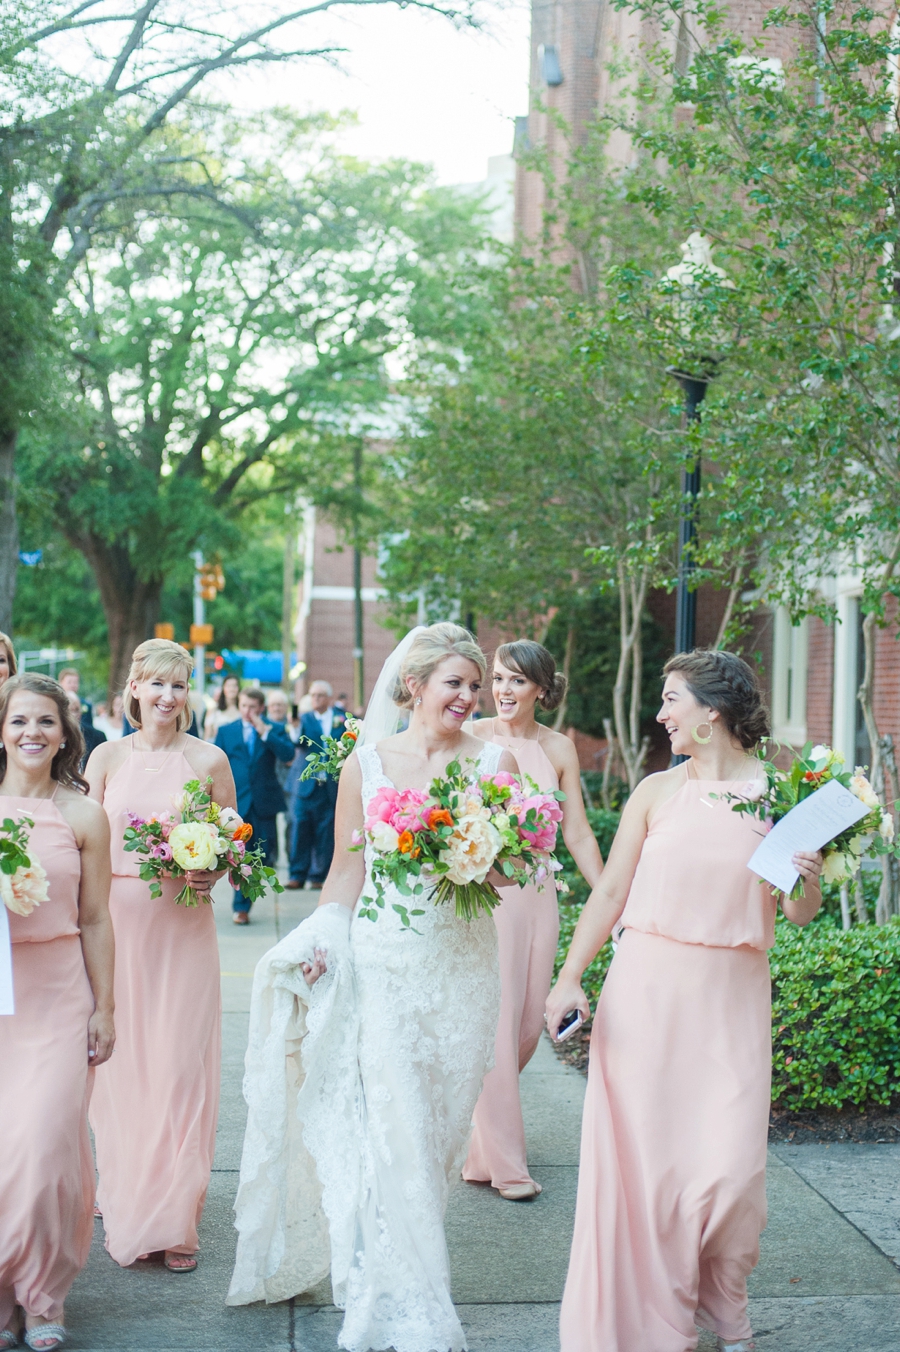 A Romantic Pink South Carolina Wedding via TheELD.com